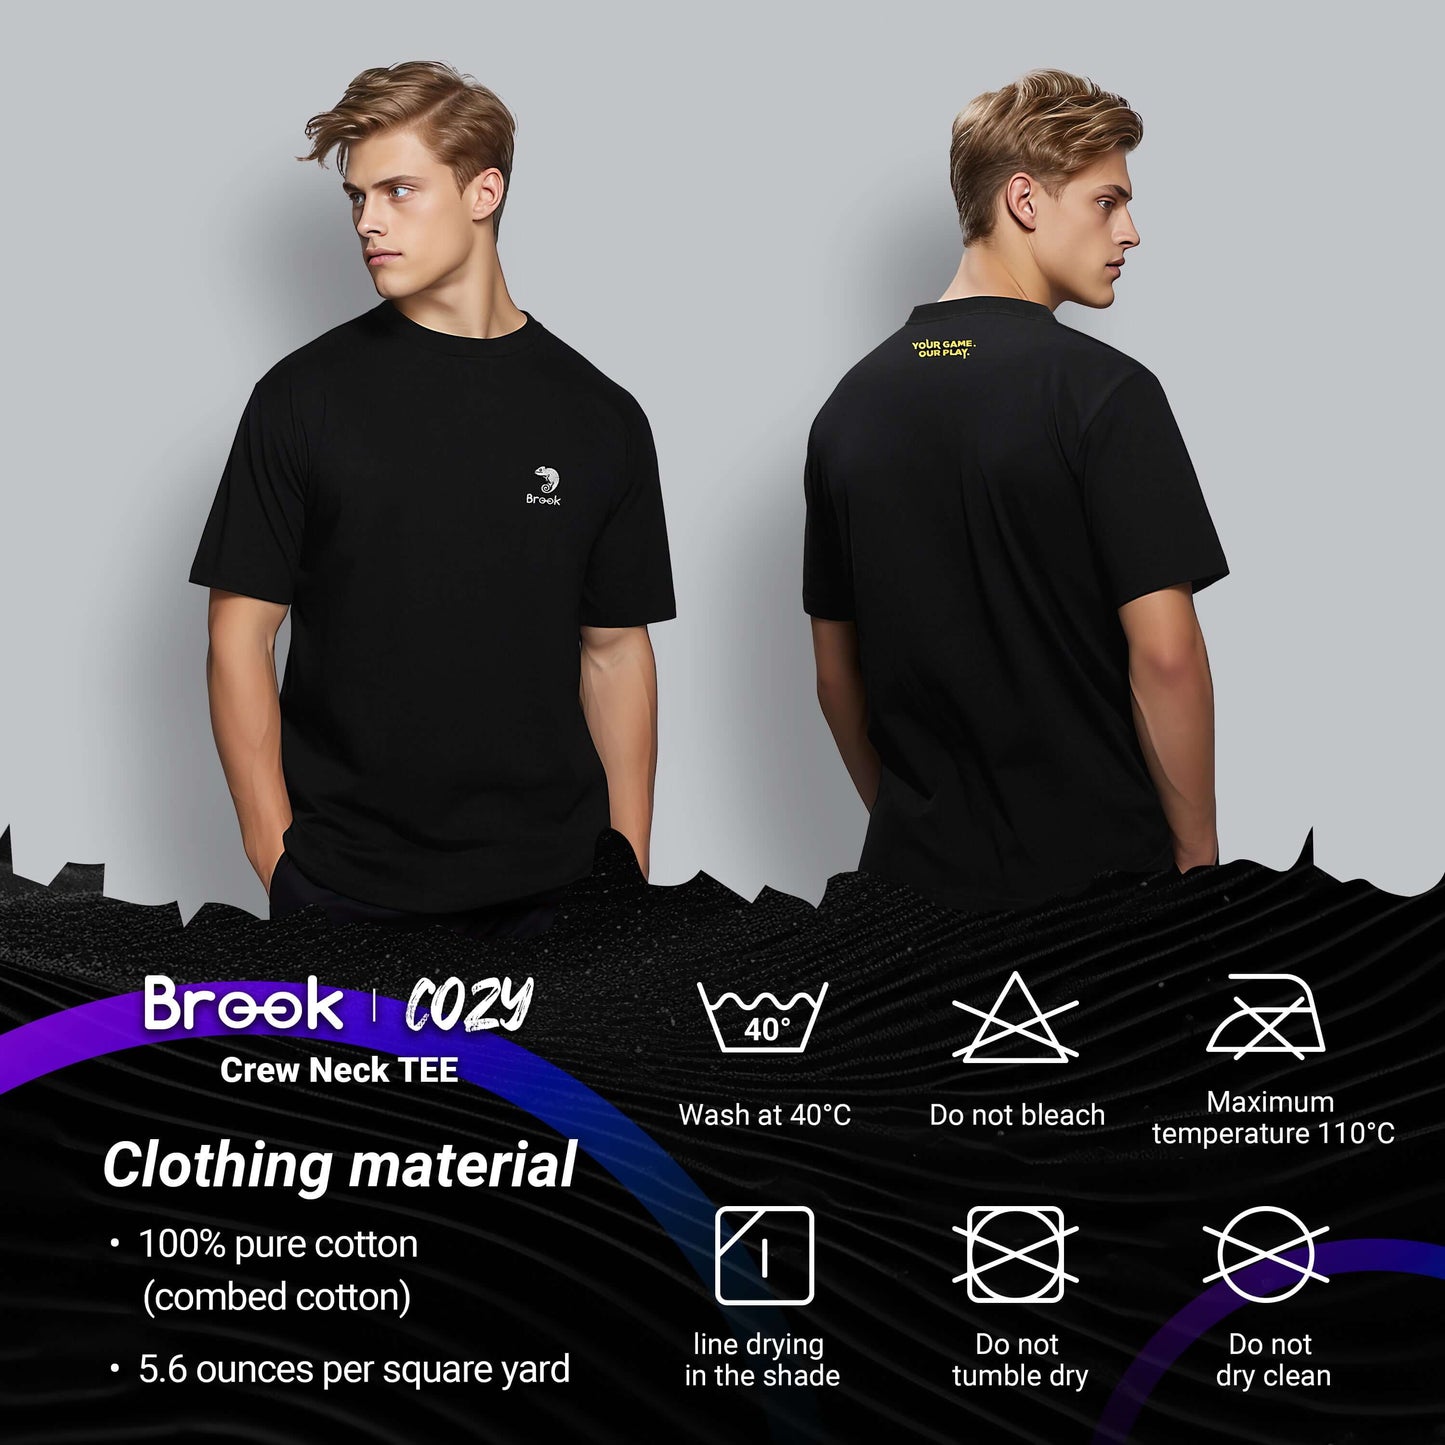 Brook Cozt T-shirt